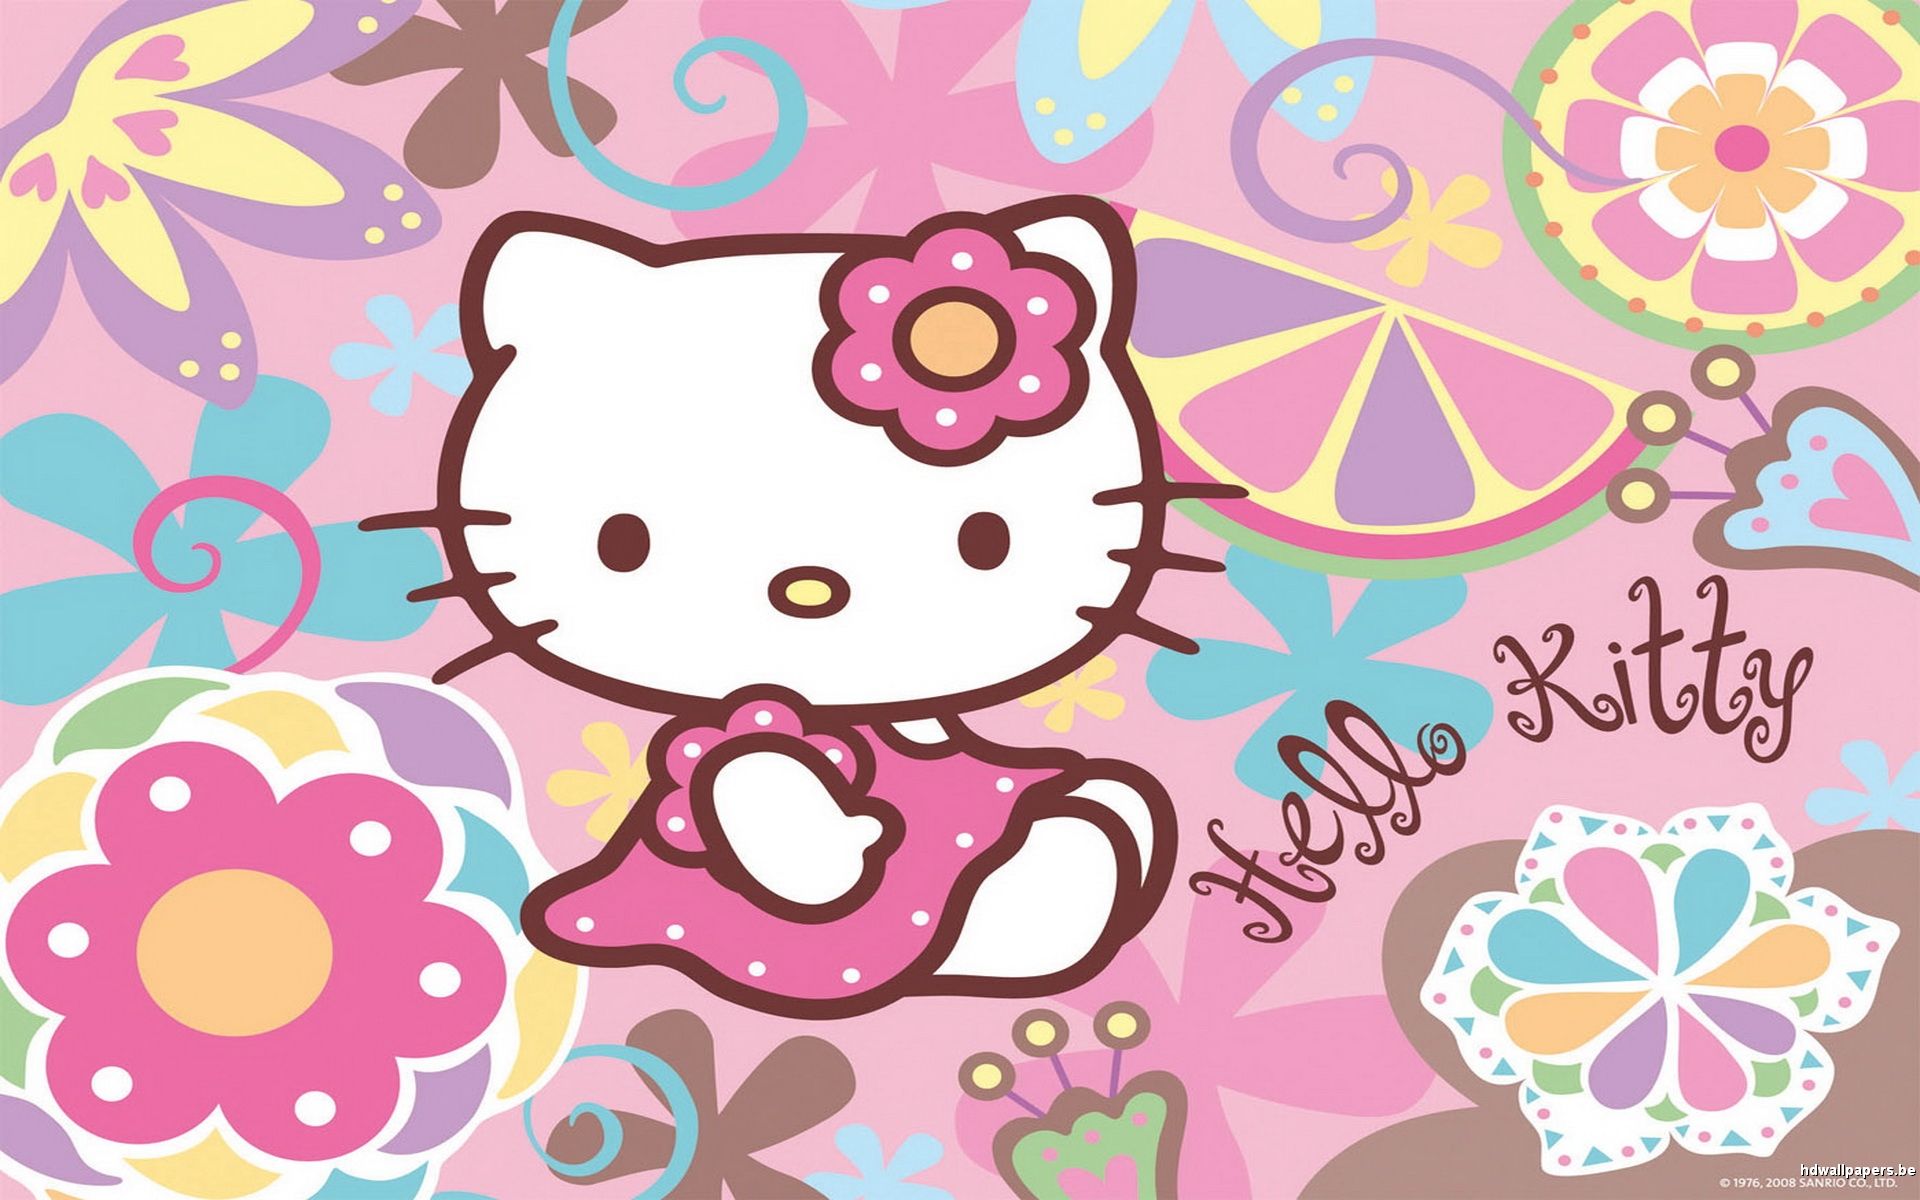 Fondos de Hello Kitty - 5F8348Y - 4USkY